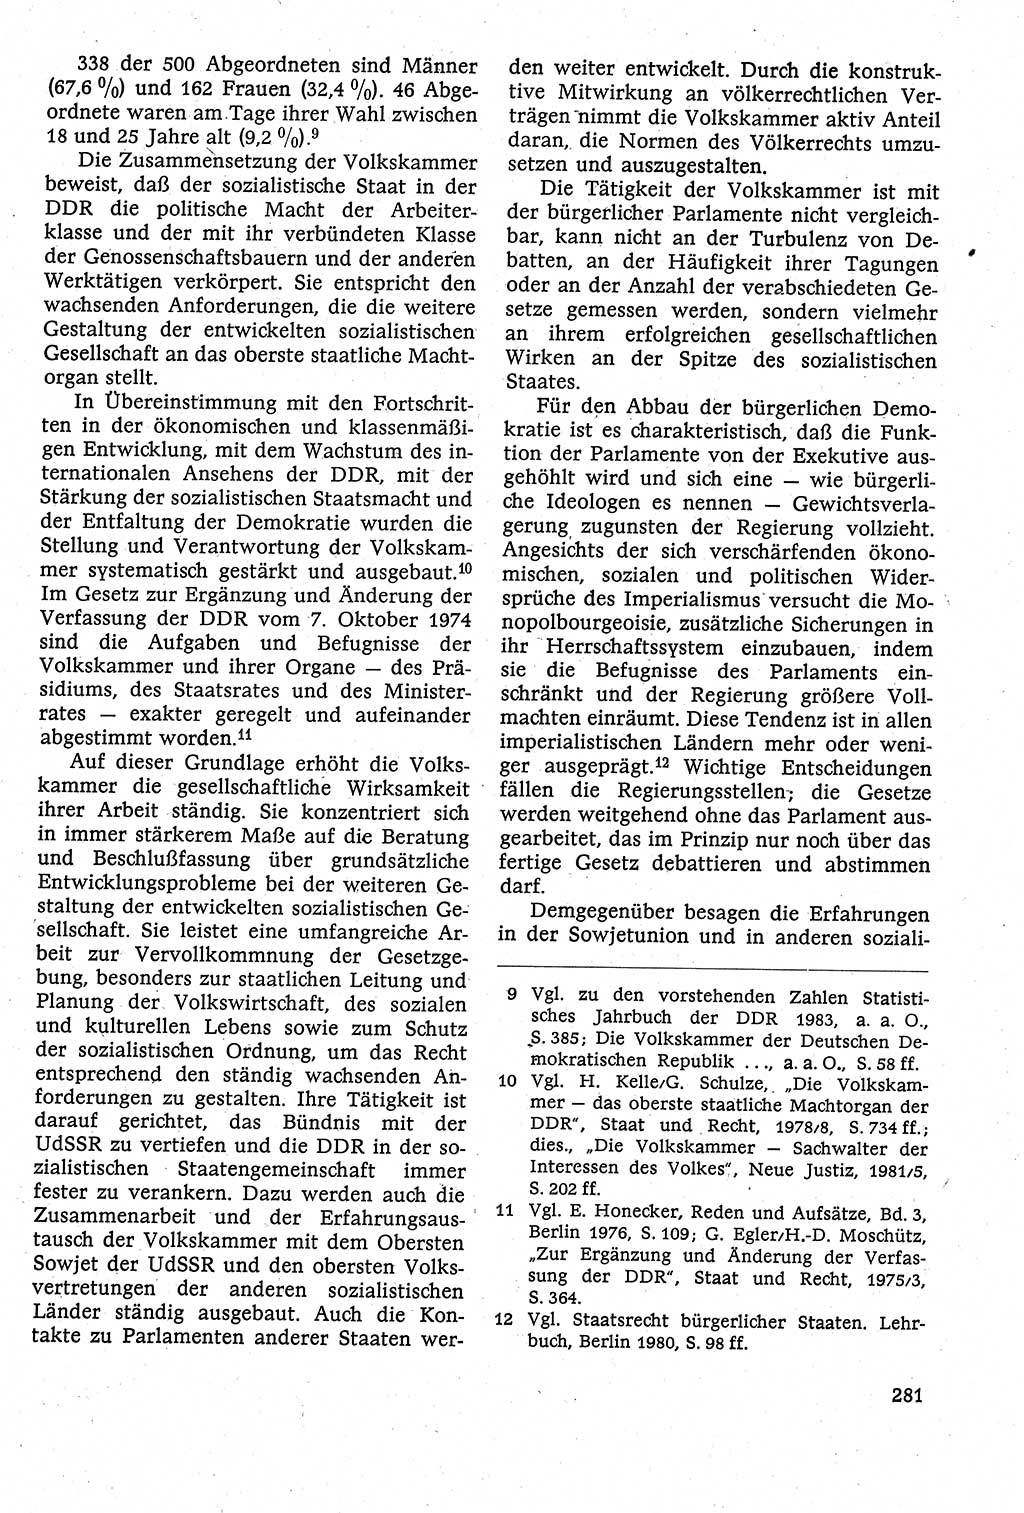 Staatsrecht der DDR [Deutsche Demokratische Republik (DDR)], Lehrbuch 1984, Seite 281 (St.-R. DDR Lb. 1984, S. 281)